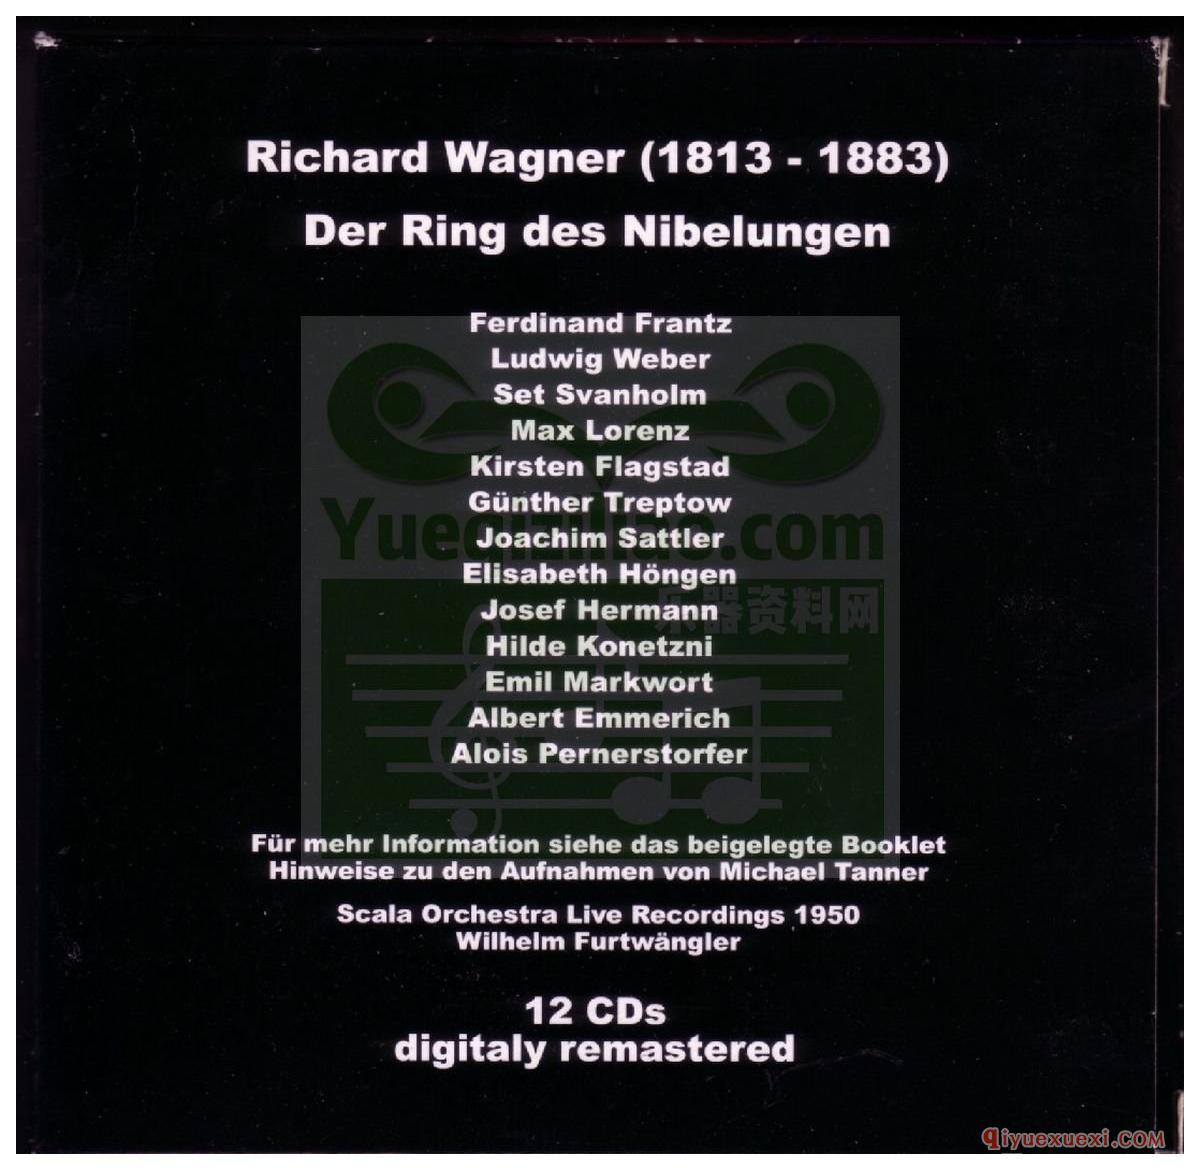 歌剧录音下载 | Furtwangler《尼伯龙根的指环》(Der Ring des Nibelungen)1950 Scala[APE]专辑